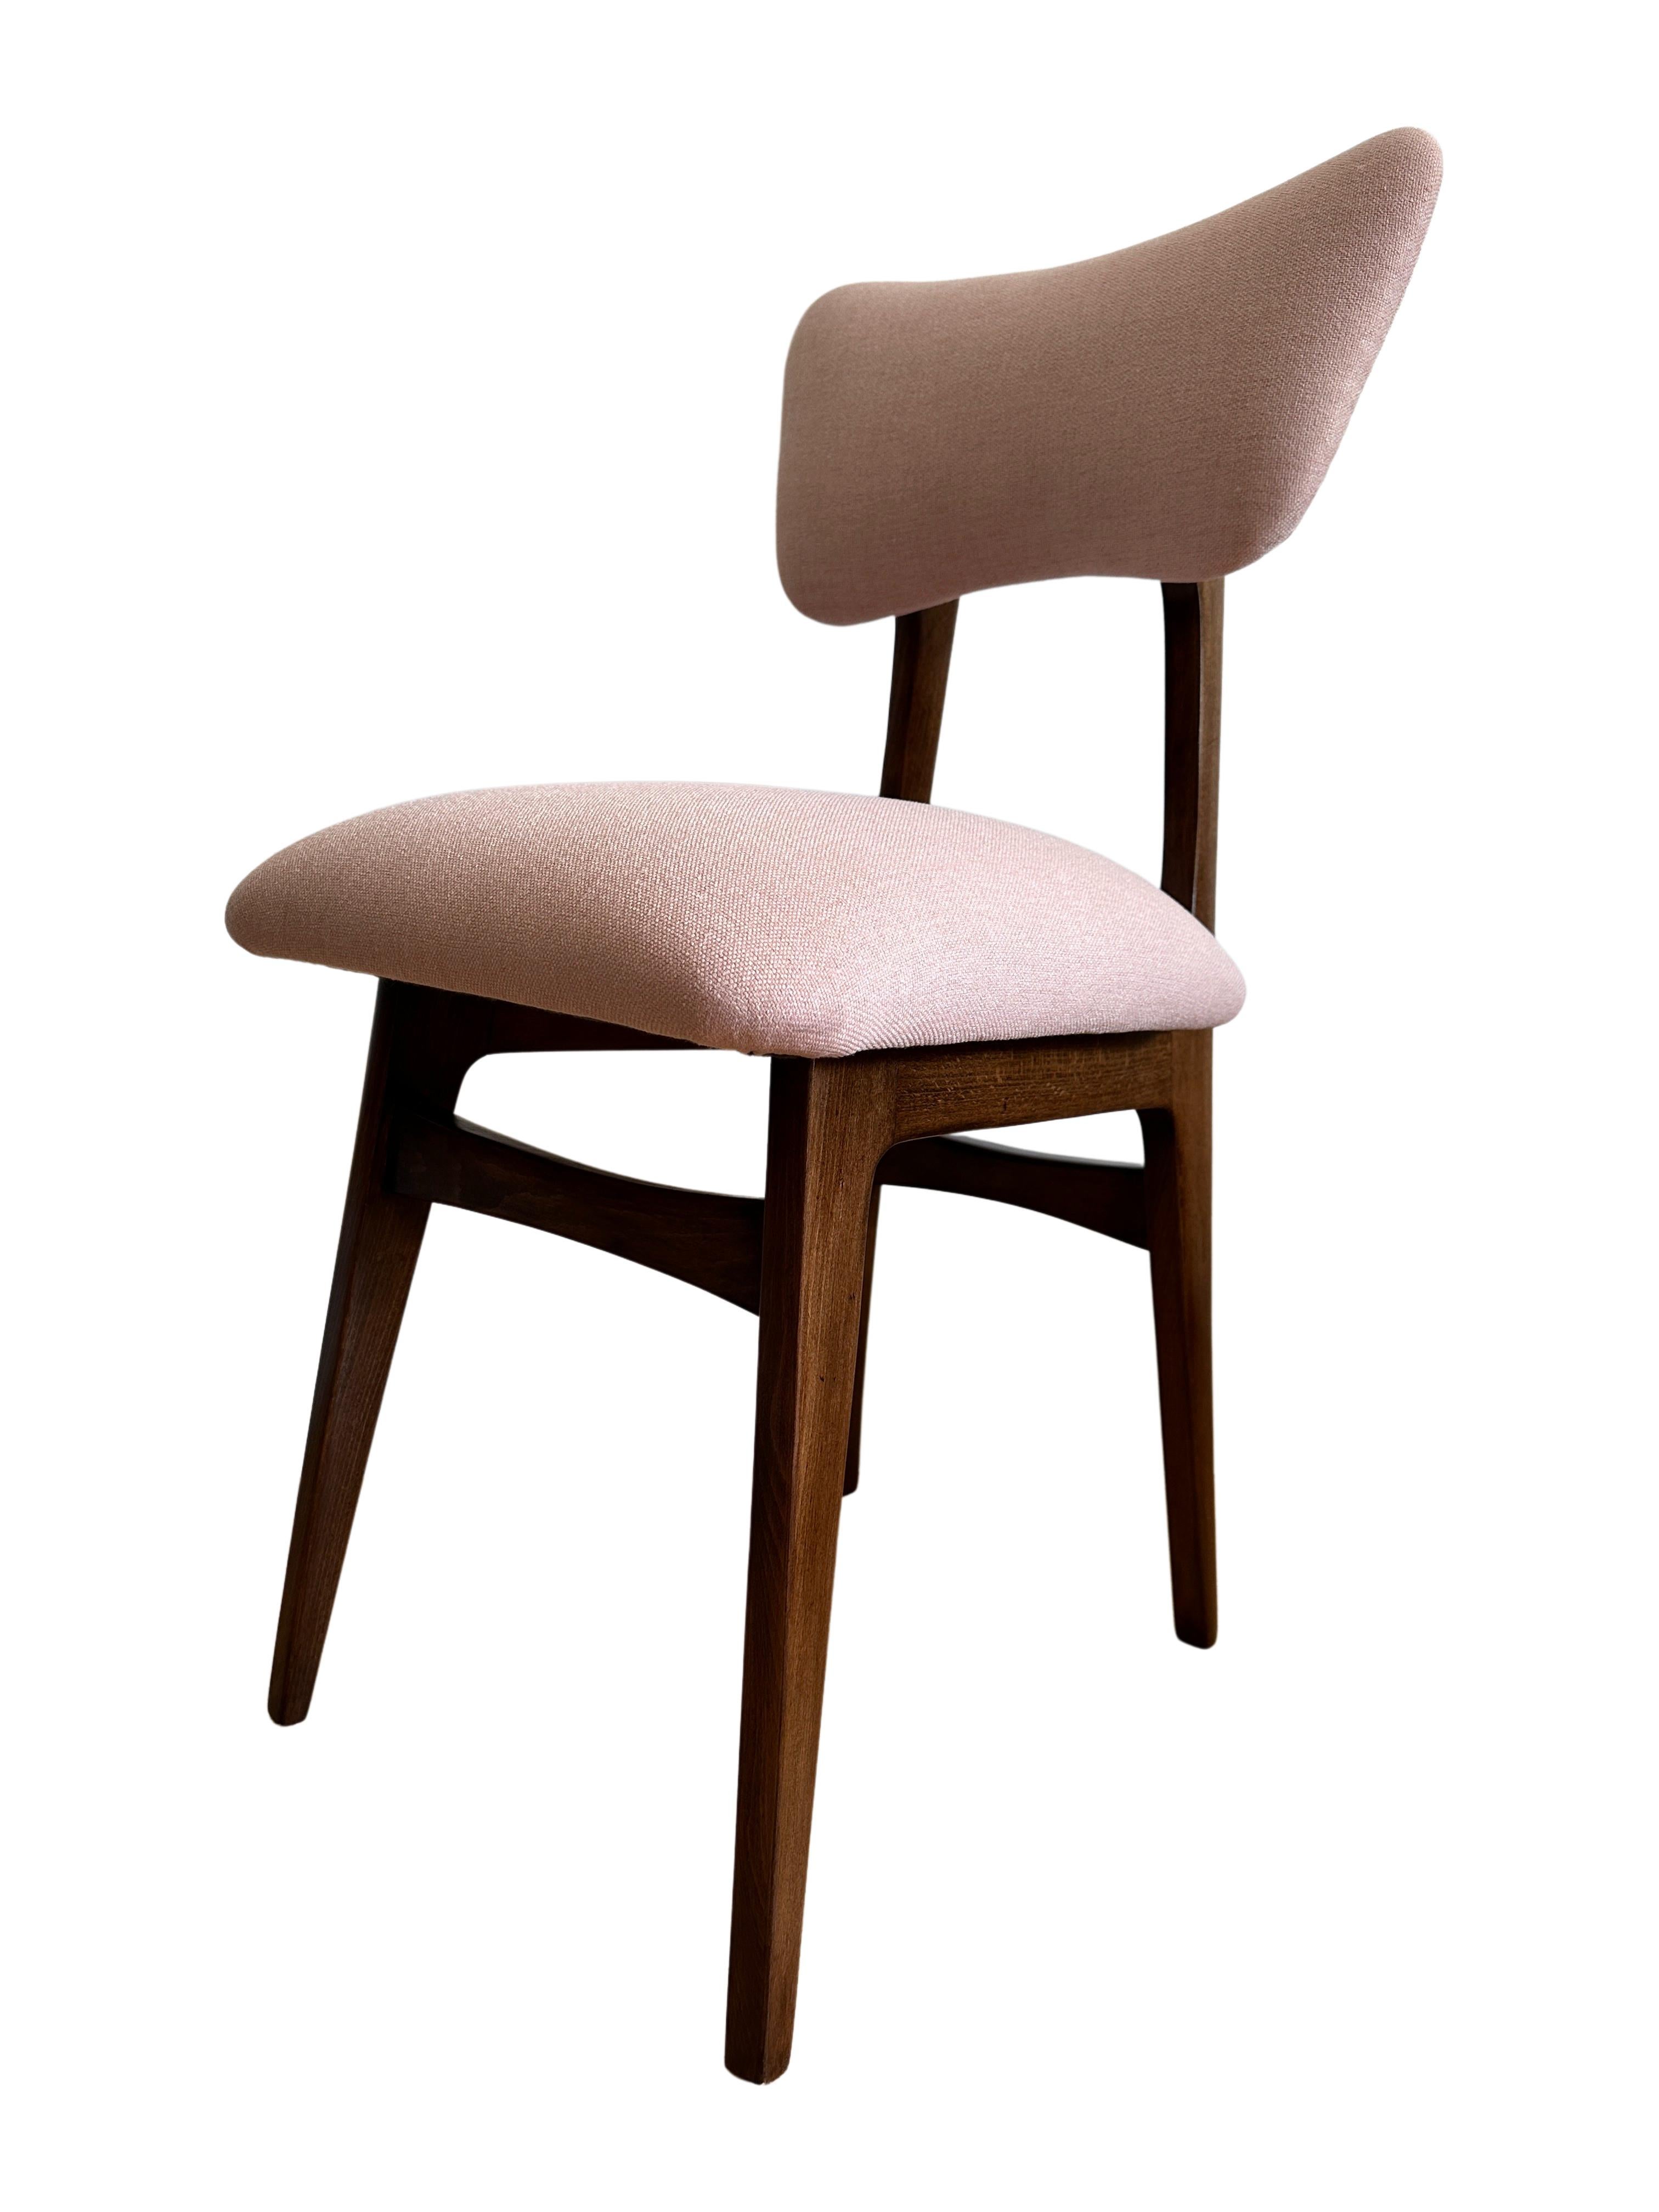 Einzigartiges Set aus sechs Stühlen, die in den 1960er Jahren in Polen hergestellt wurden, entworfen von Rajmund Halas. 

Die Polsterung besteht aus einem Stoff mit einer interessanten Struktur aus dicht gewebtem Leinen, der sich angenehm weich